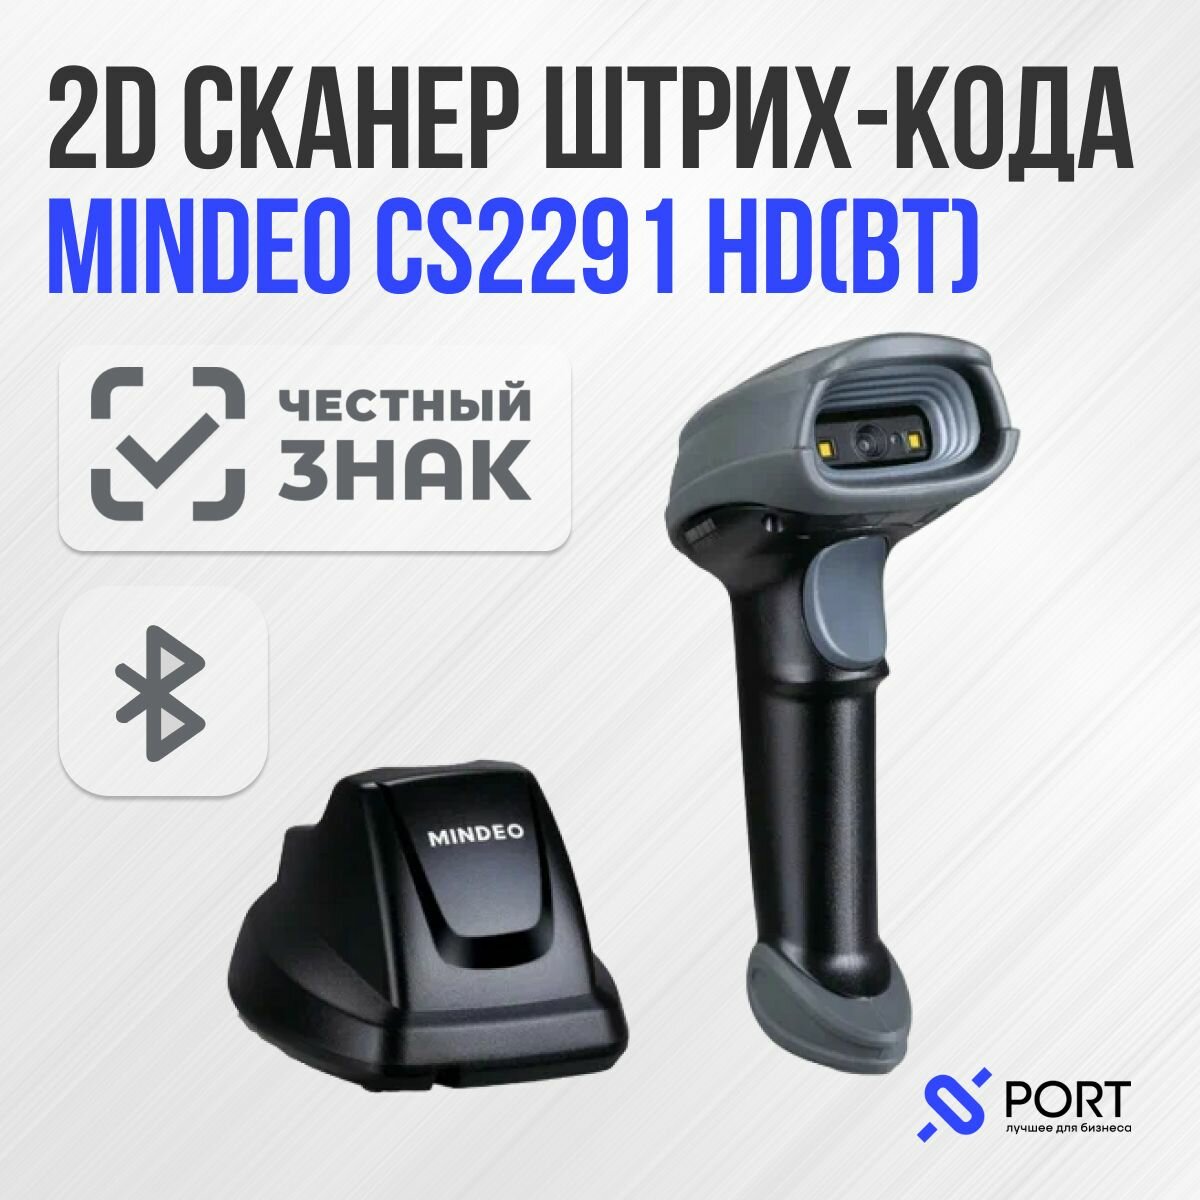 Сканер штрих-кодов Mindeo CS2291-HD (BT), беспроводной, с зарядной базой